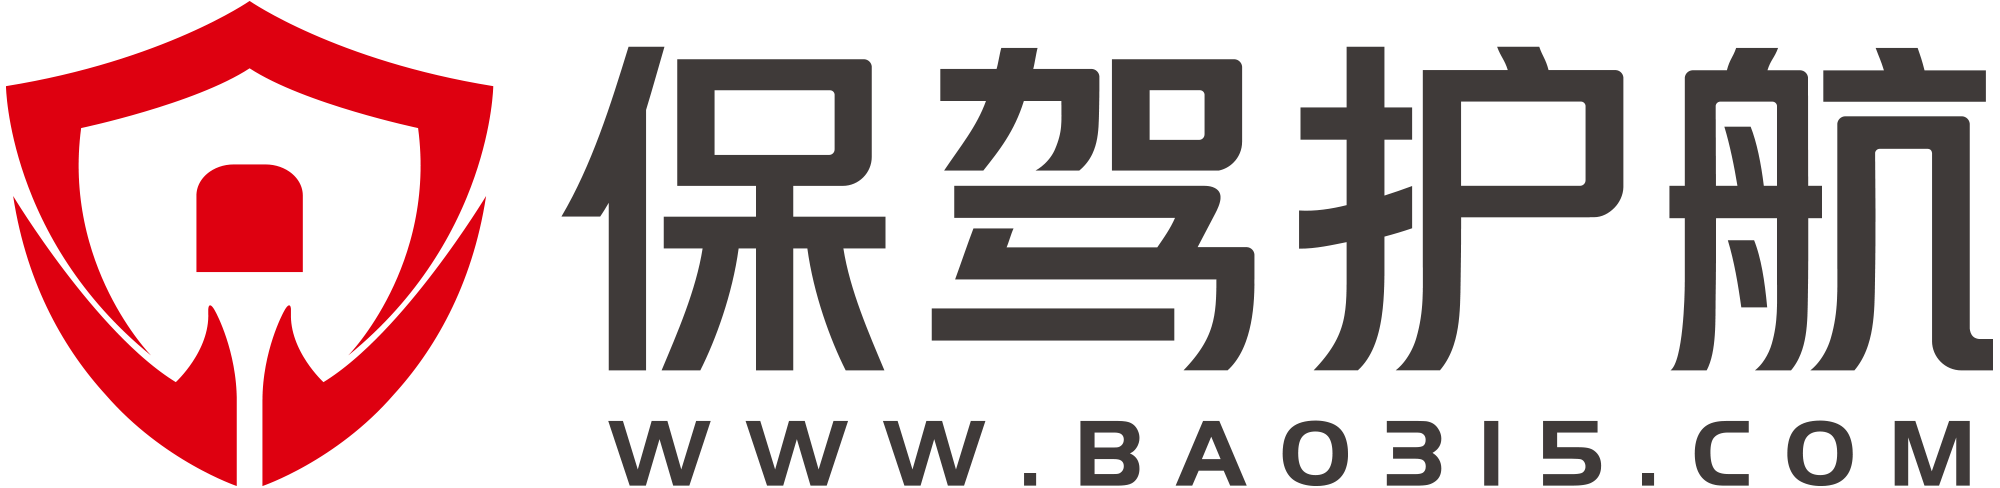 bao315.com logo